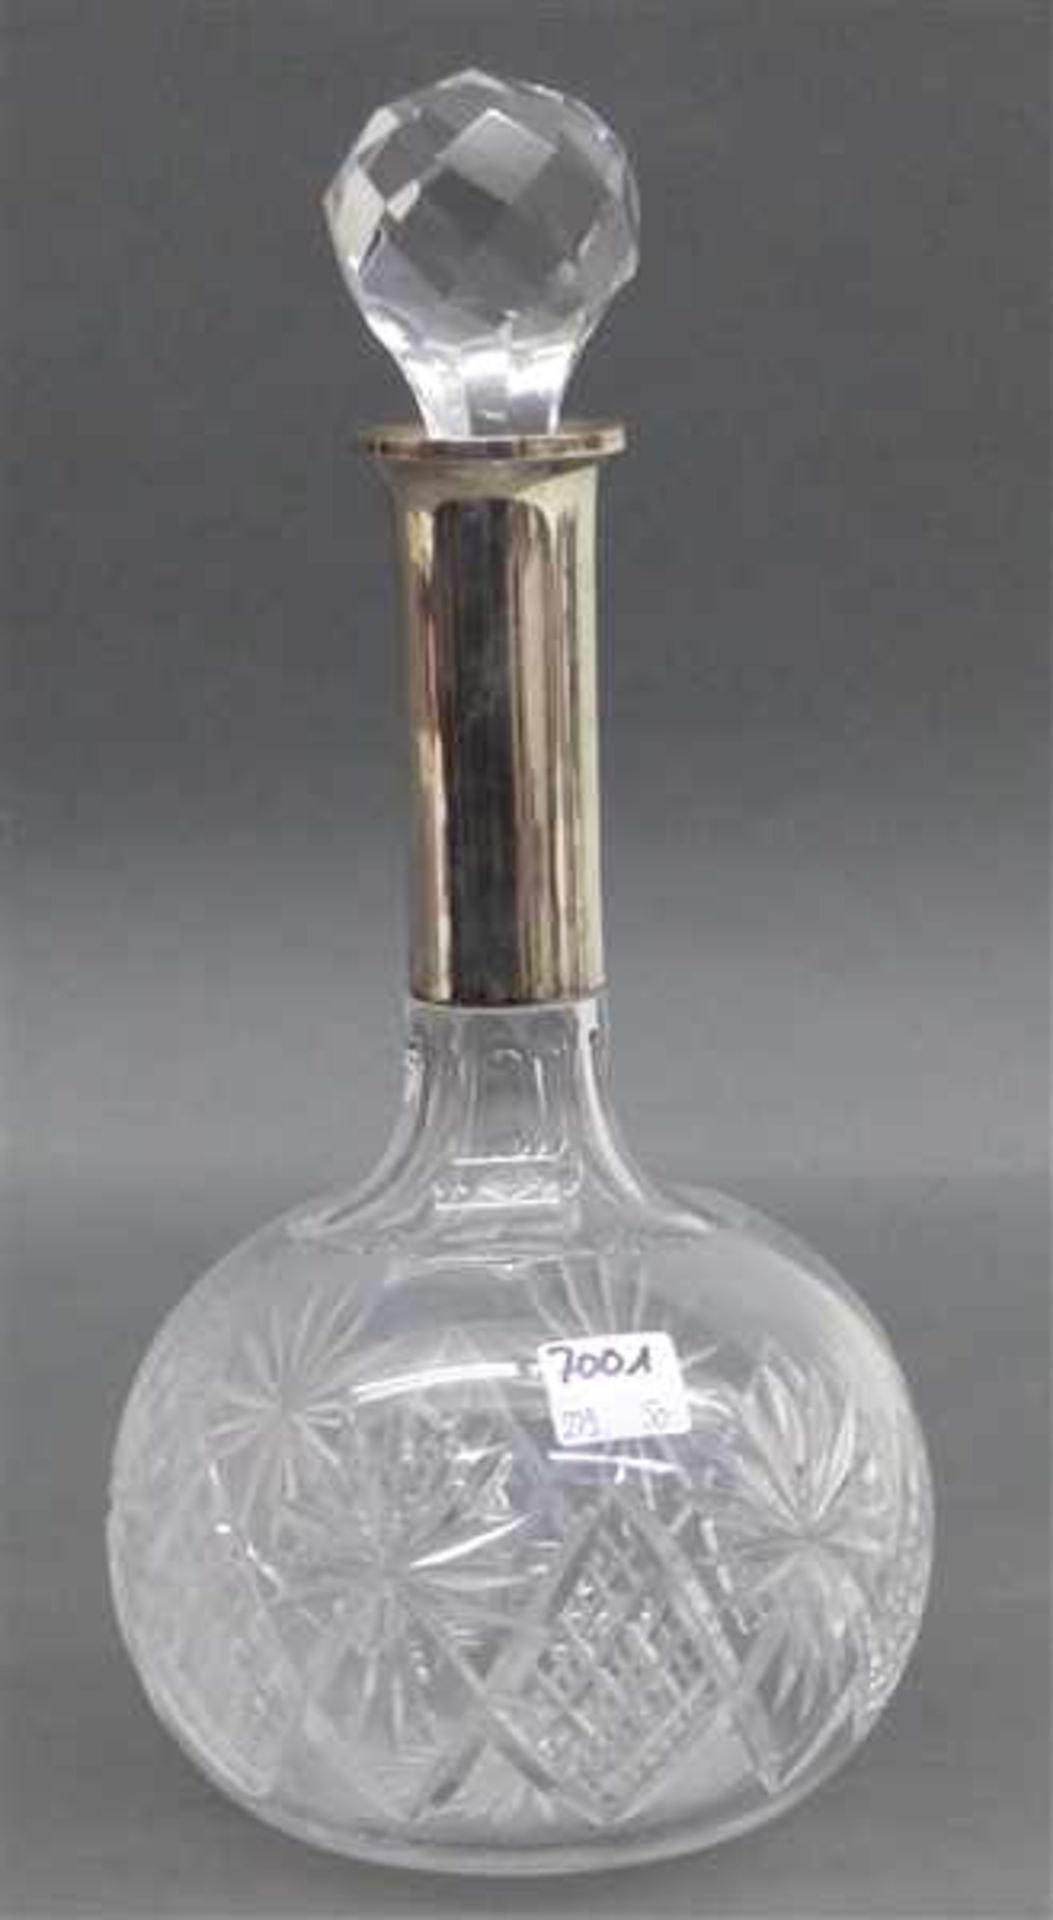 Kristallkaraffe 800er Silbermontur, farblos, beschliffen, mit Stöpsel, um 1930, h 30 cm,